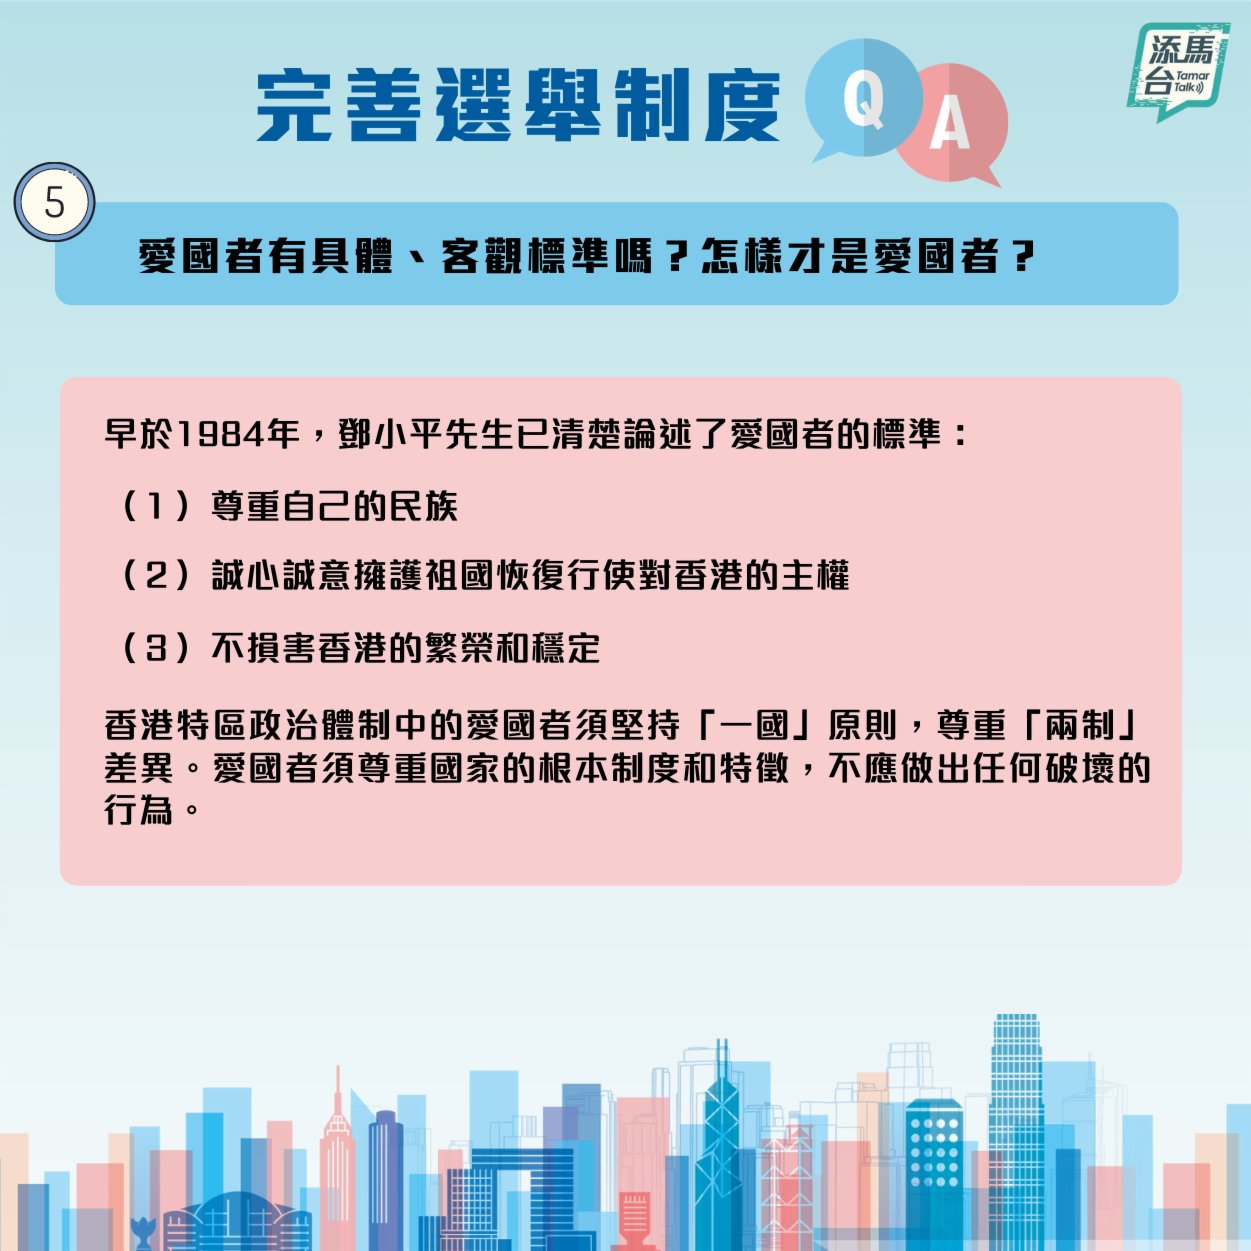 特區政府近日在社交媒體上發文，系統回答了新修訂的基本法附件一和附件二怎樣令香港由亂到治，確保愛國者治港，「一國兩制」行穩至遠，香港繼續安定繁榮等一系列問題。